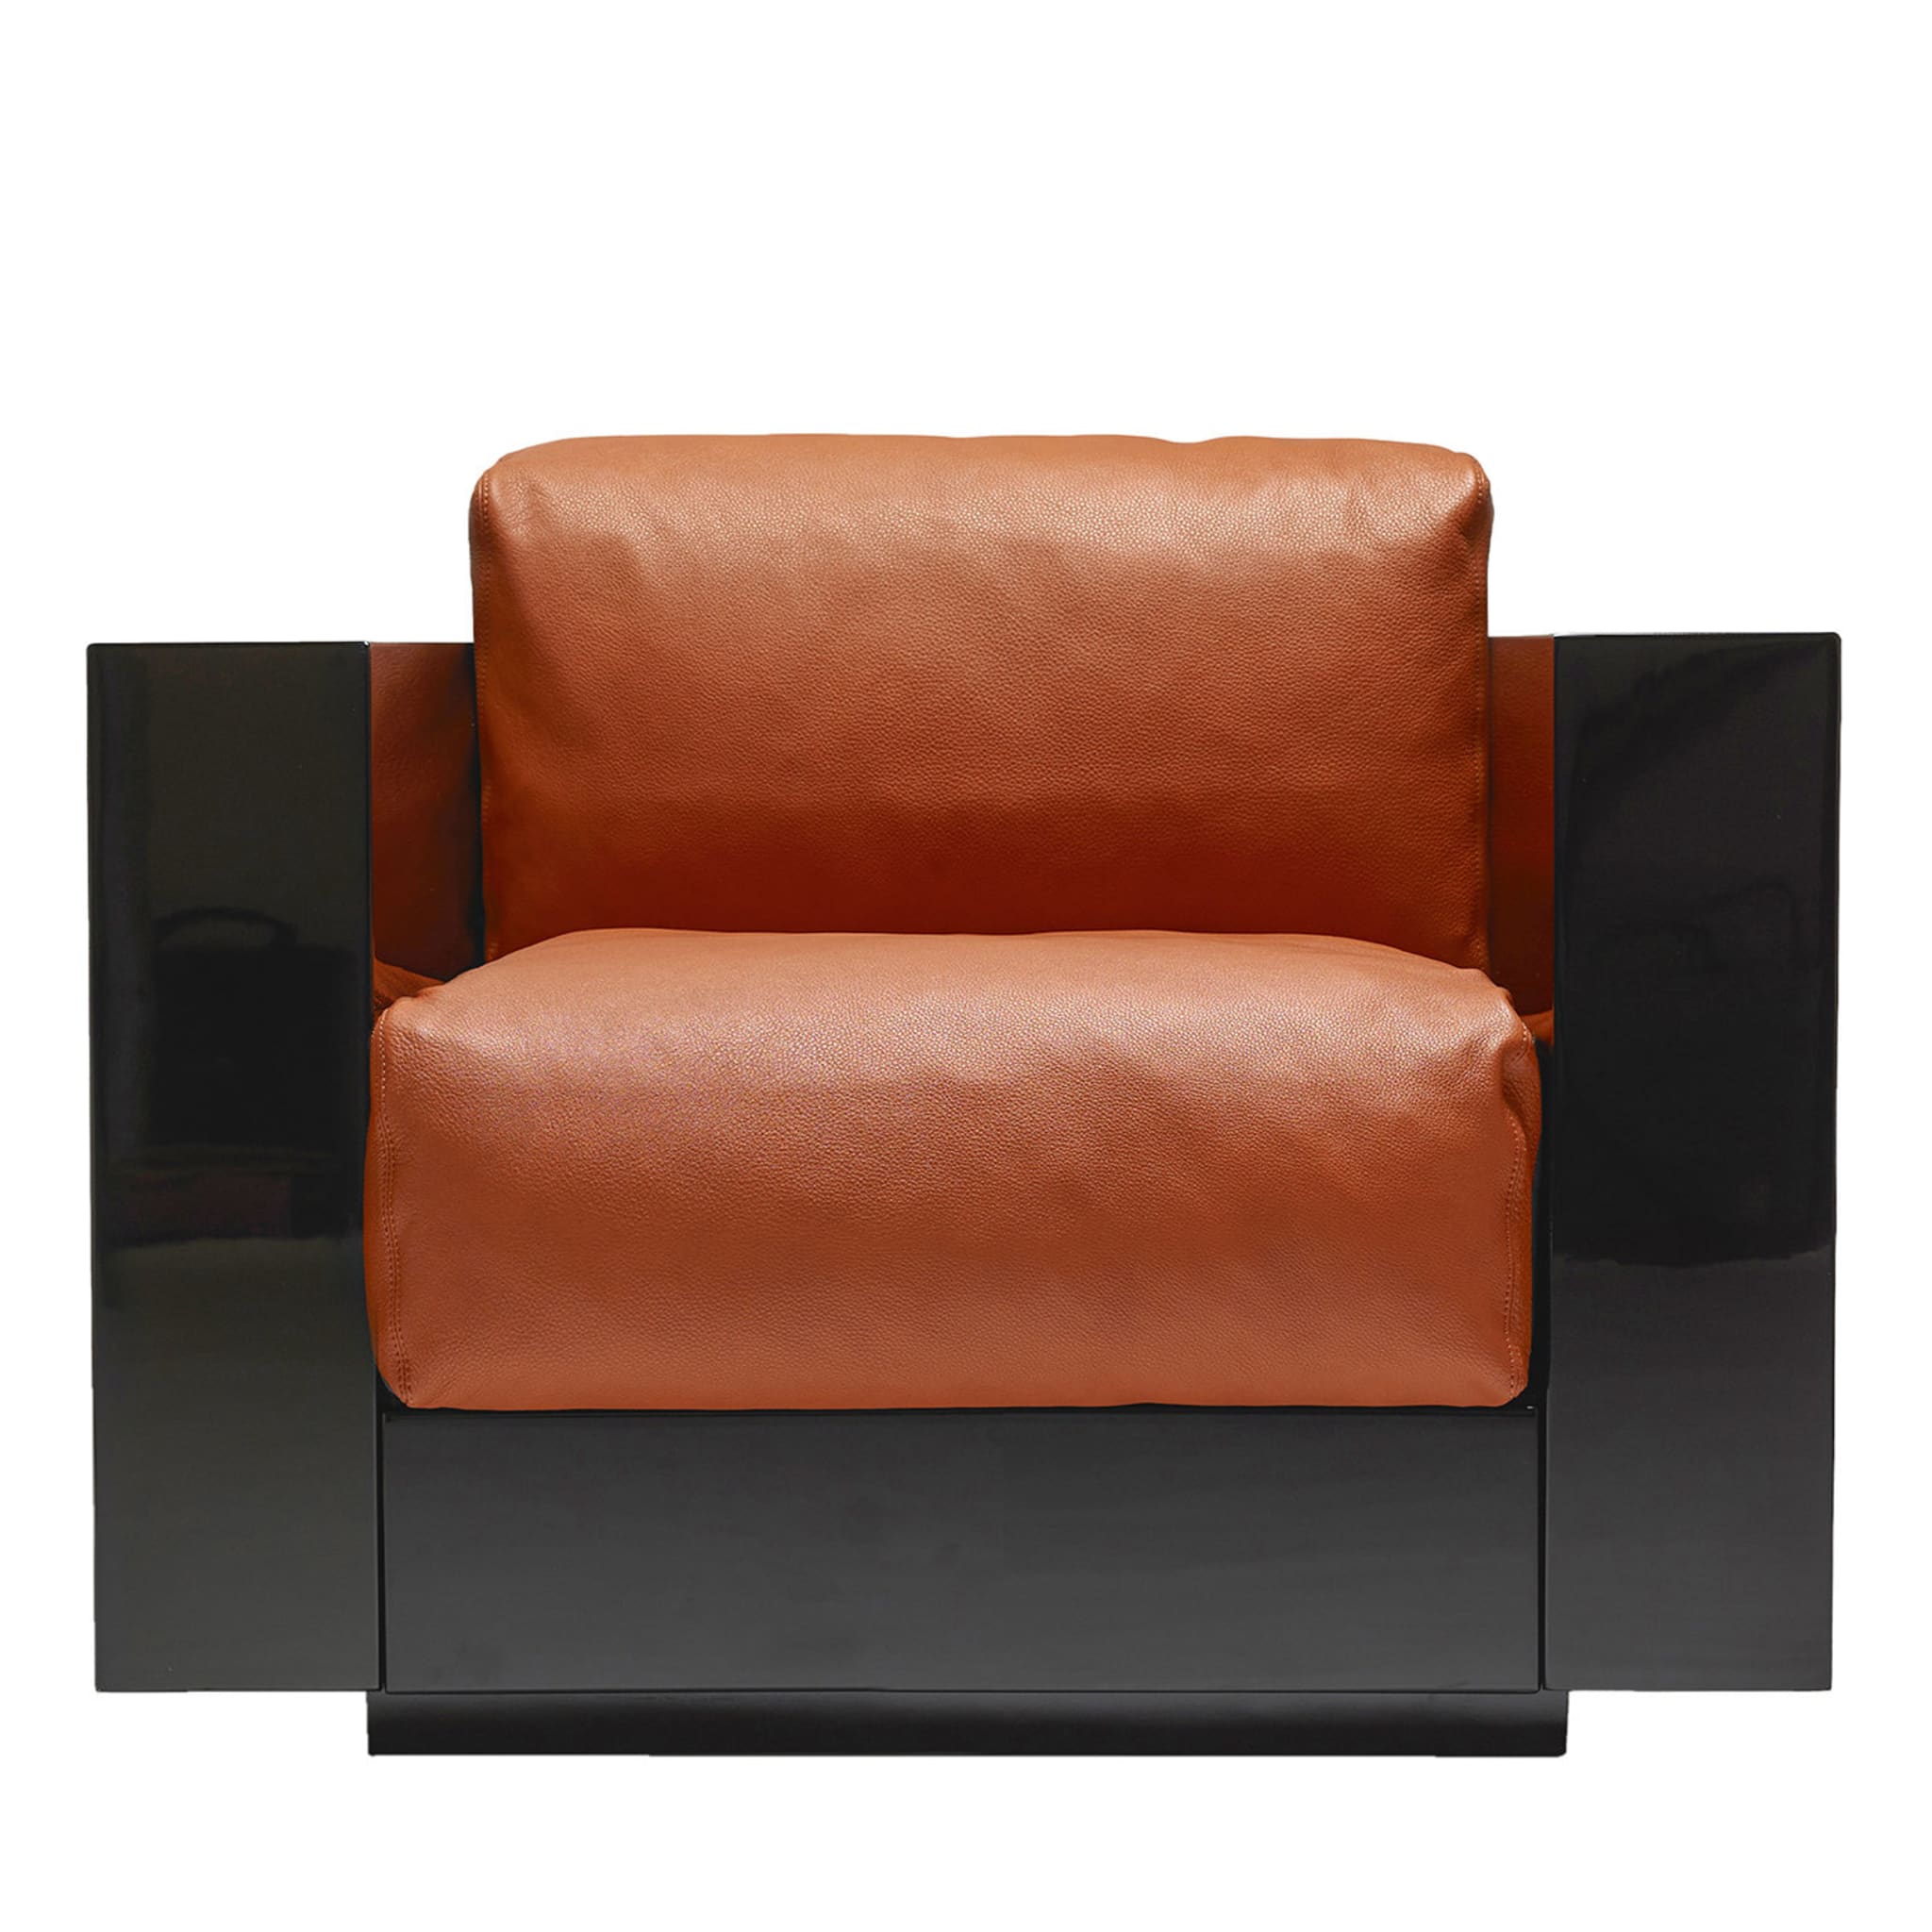 Saratoga Orange Armchair by Lella and Massimo Vignelli - Main view